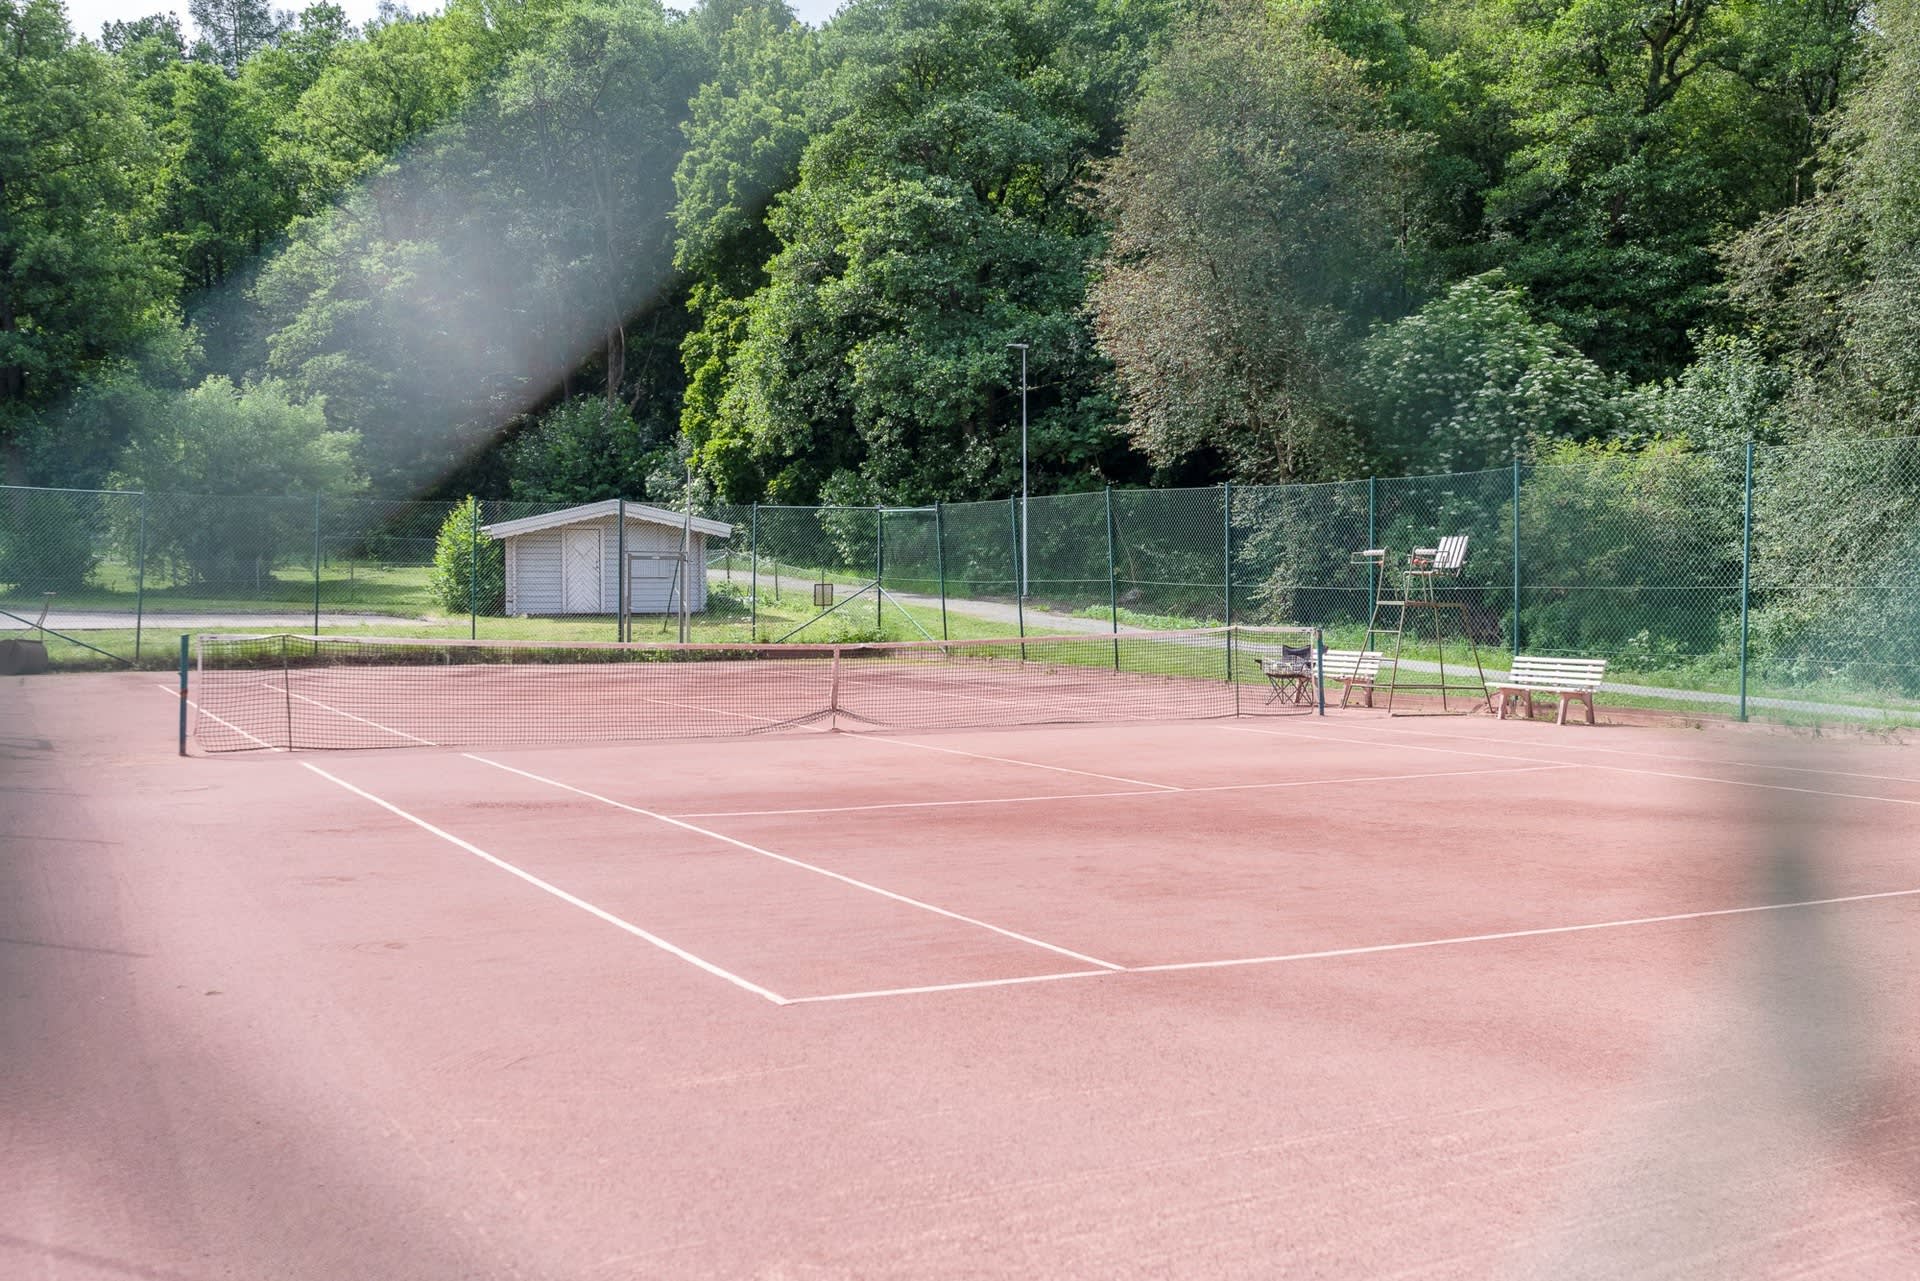 I anslutning till Idrottsparken ligger det även tennisbanor